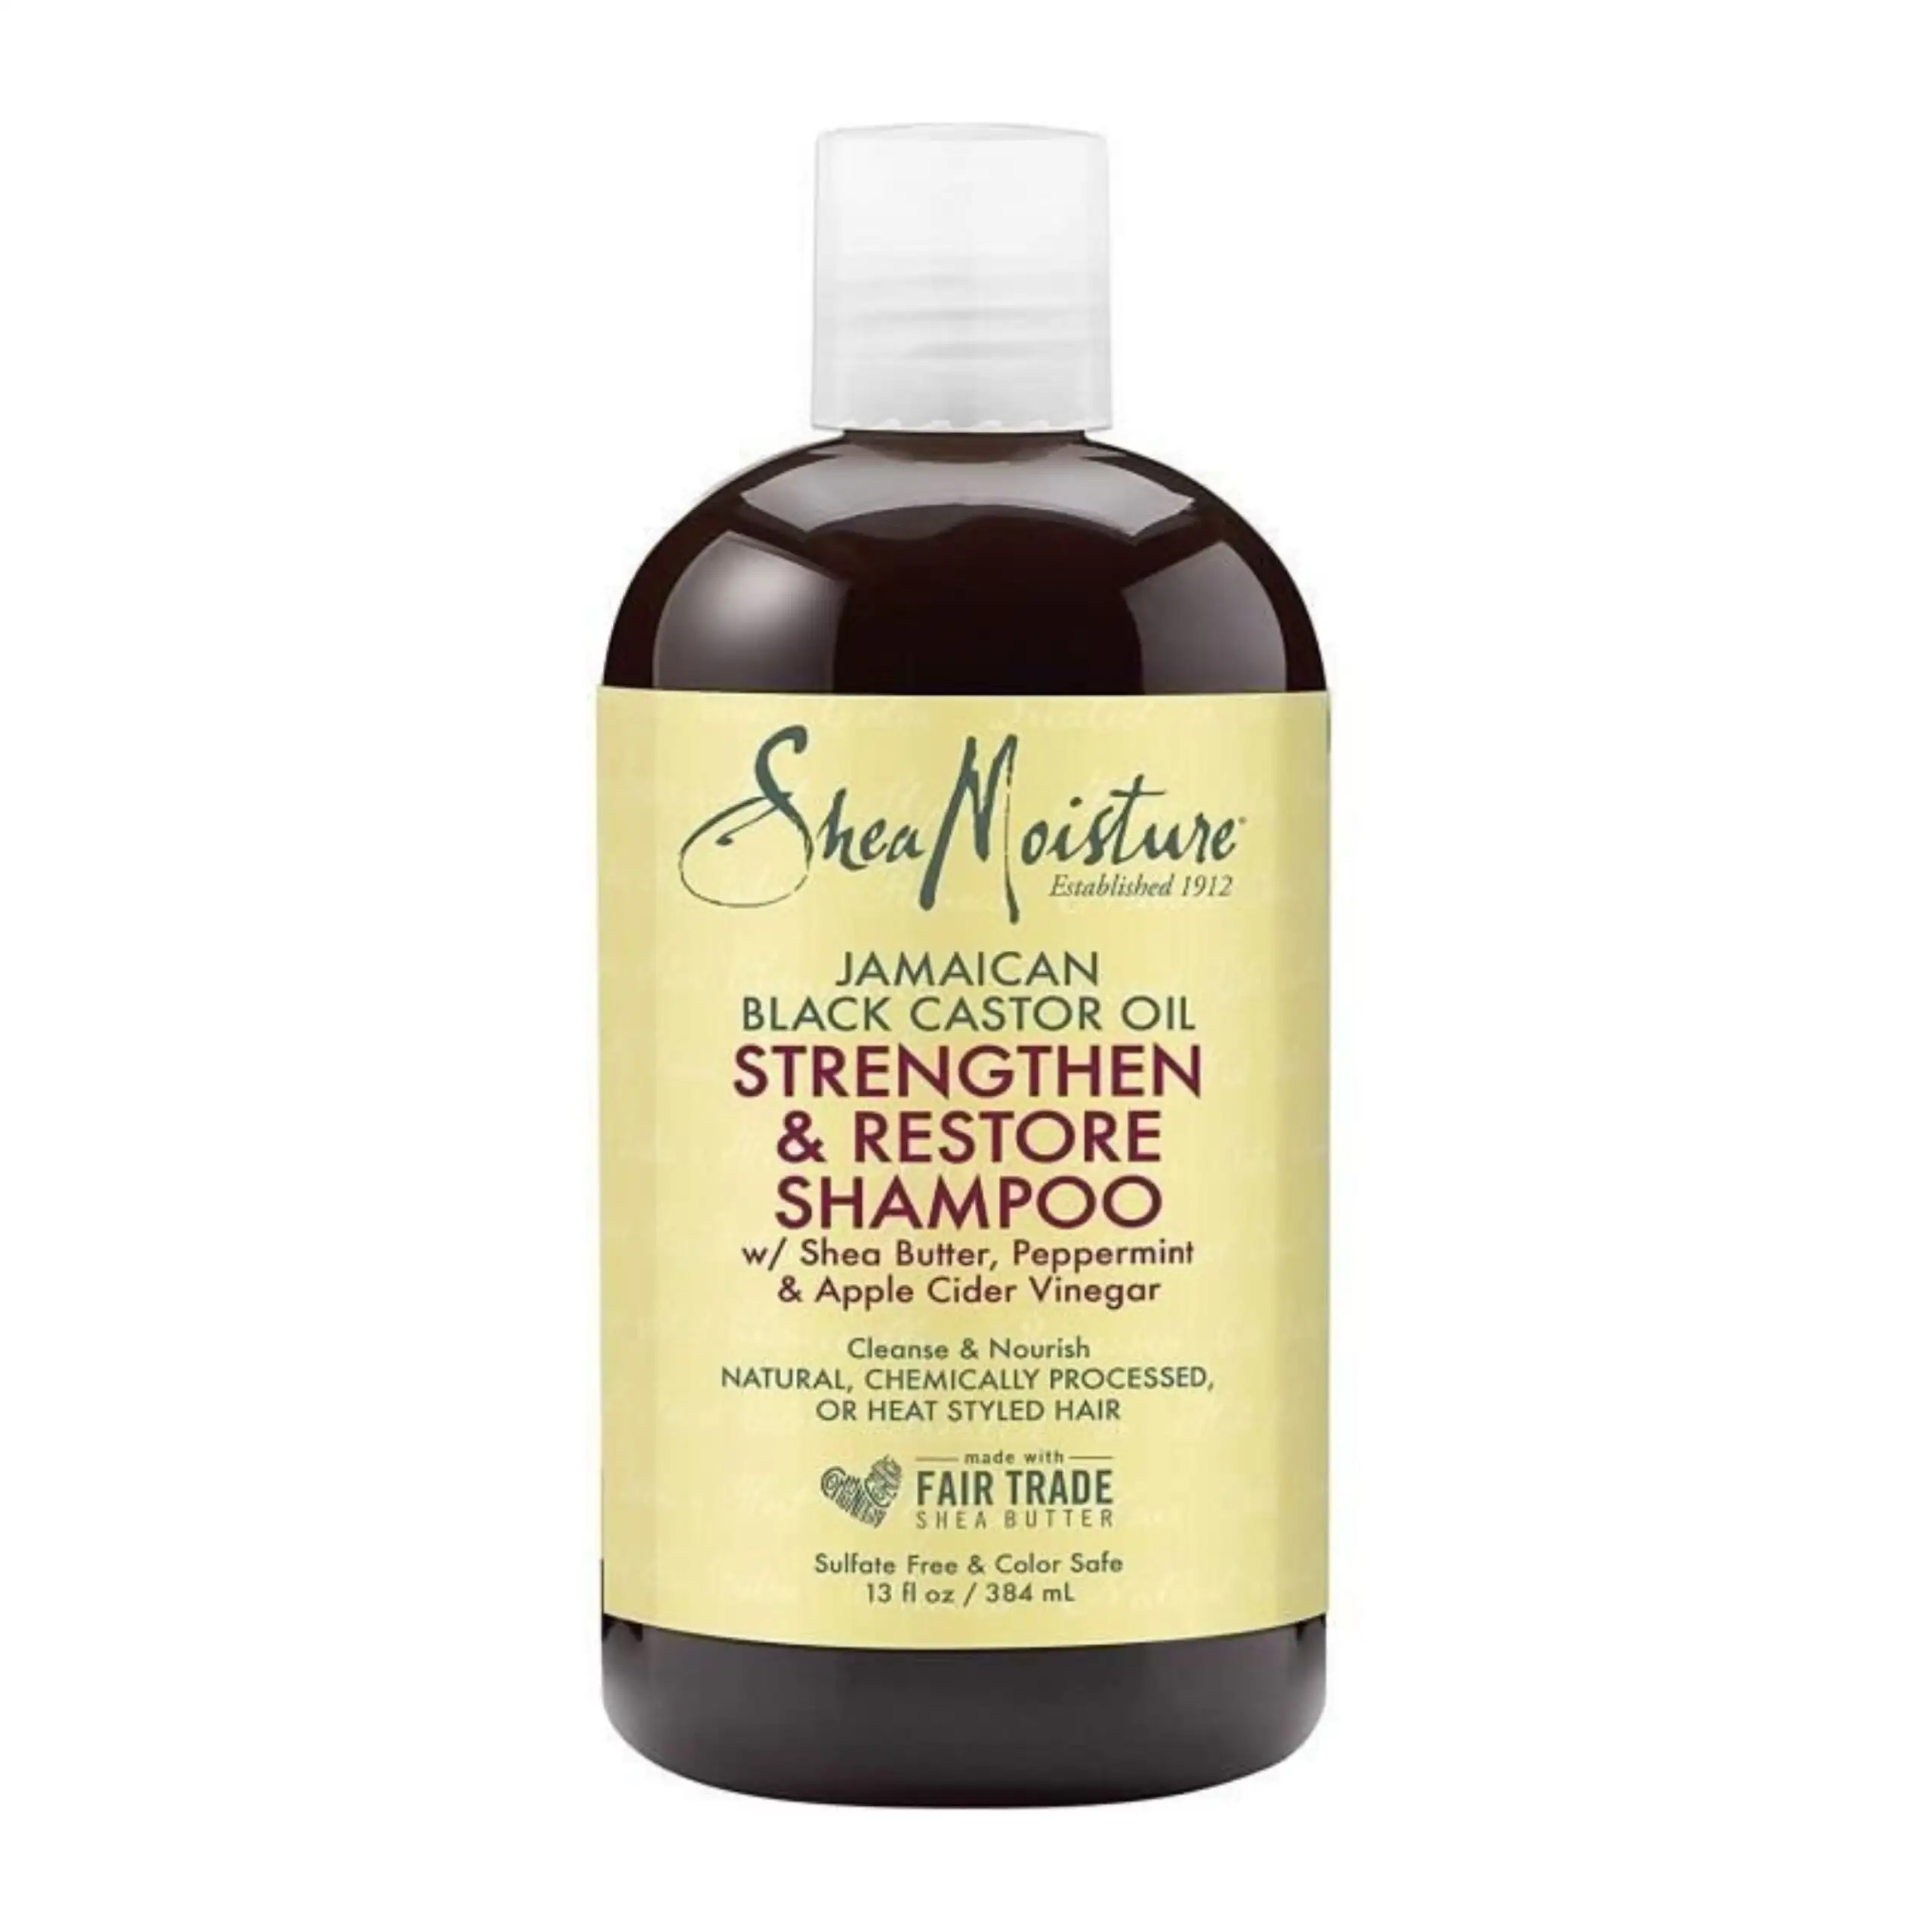 Shea moisture jamaican black castor oil strengthen restore shampoo 384 ml_2043. DIAYTAR SENEGAL - L'Art de Vivre l'Élégance Accessible. Parcourez notre gamme variée et choisissez des produits qui ajoutent une touche de sophistication à votre style.